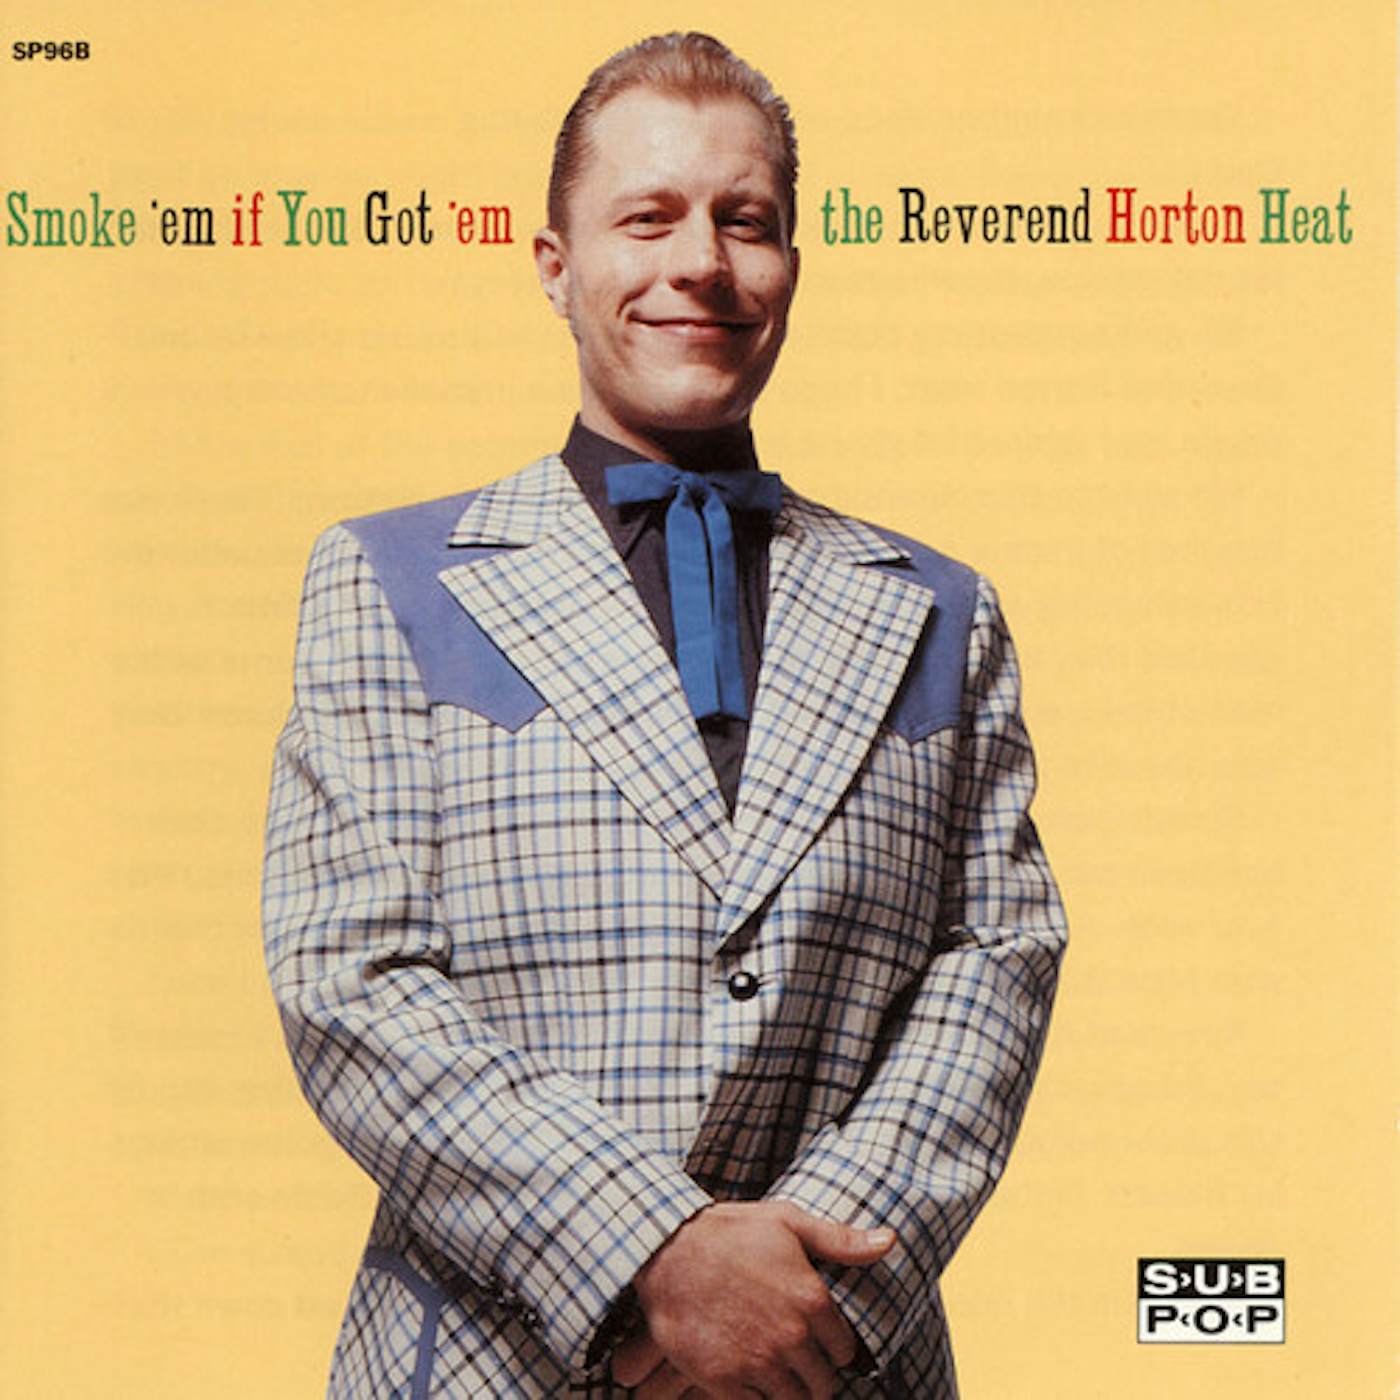 The Reverend Horton Heat Smoke 'em if You Got 'em Vinyl Record